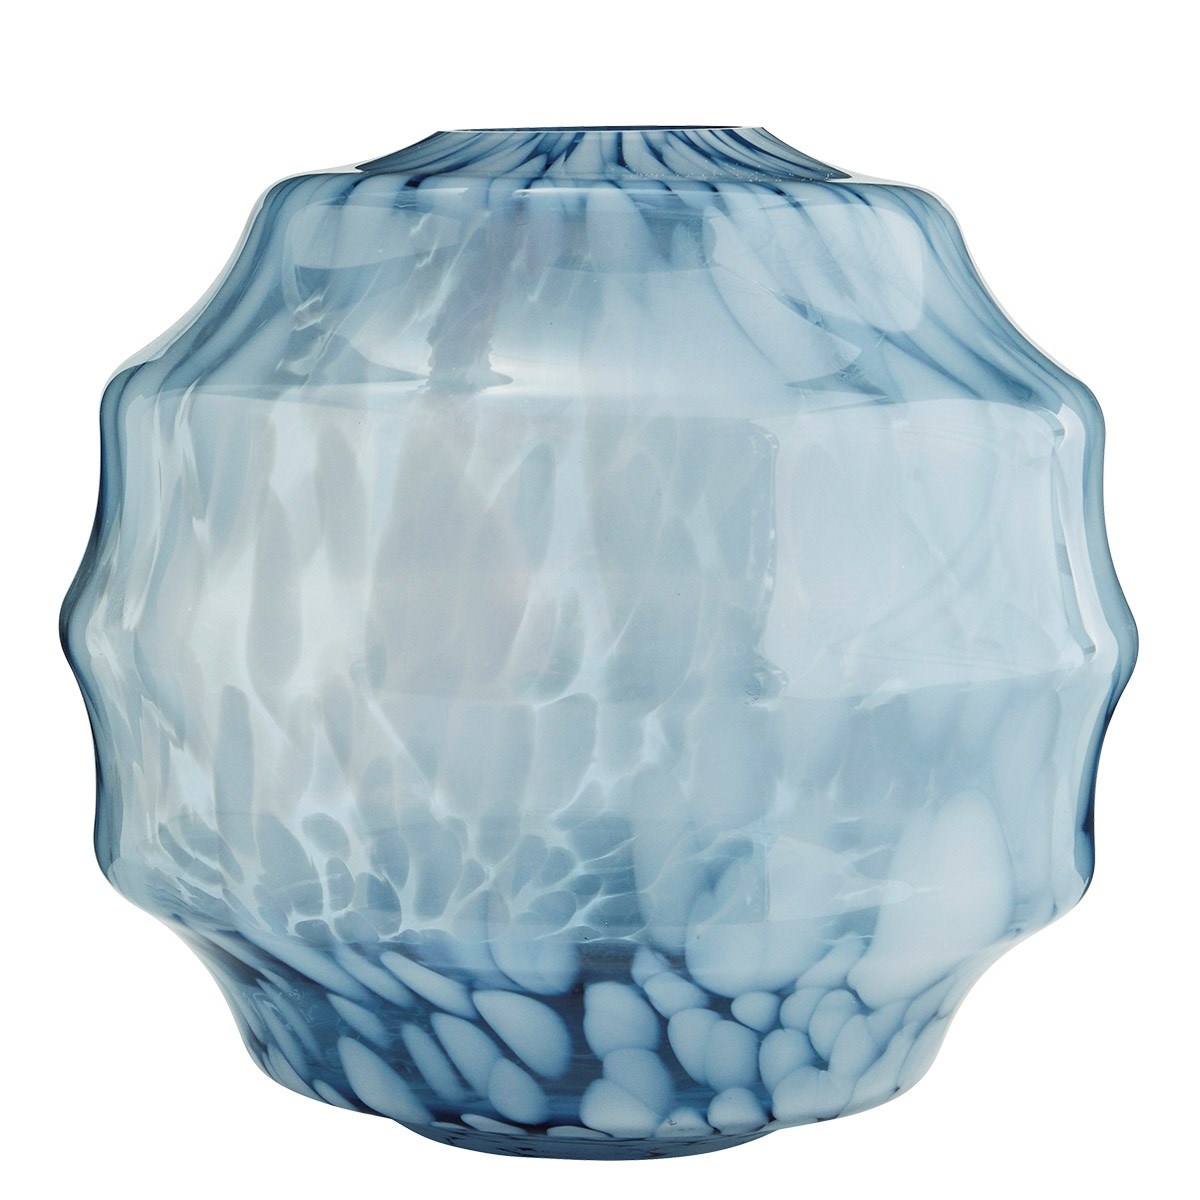 Madam Stoltz XL Blue and White Round Glass Vase